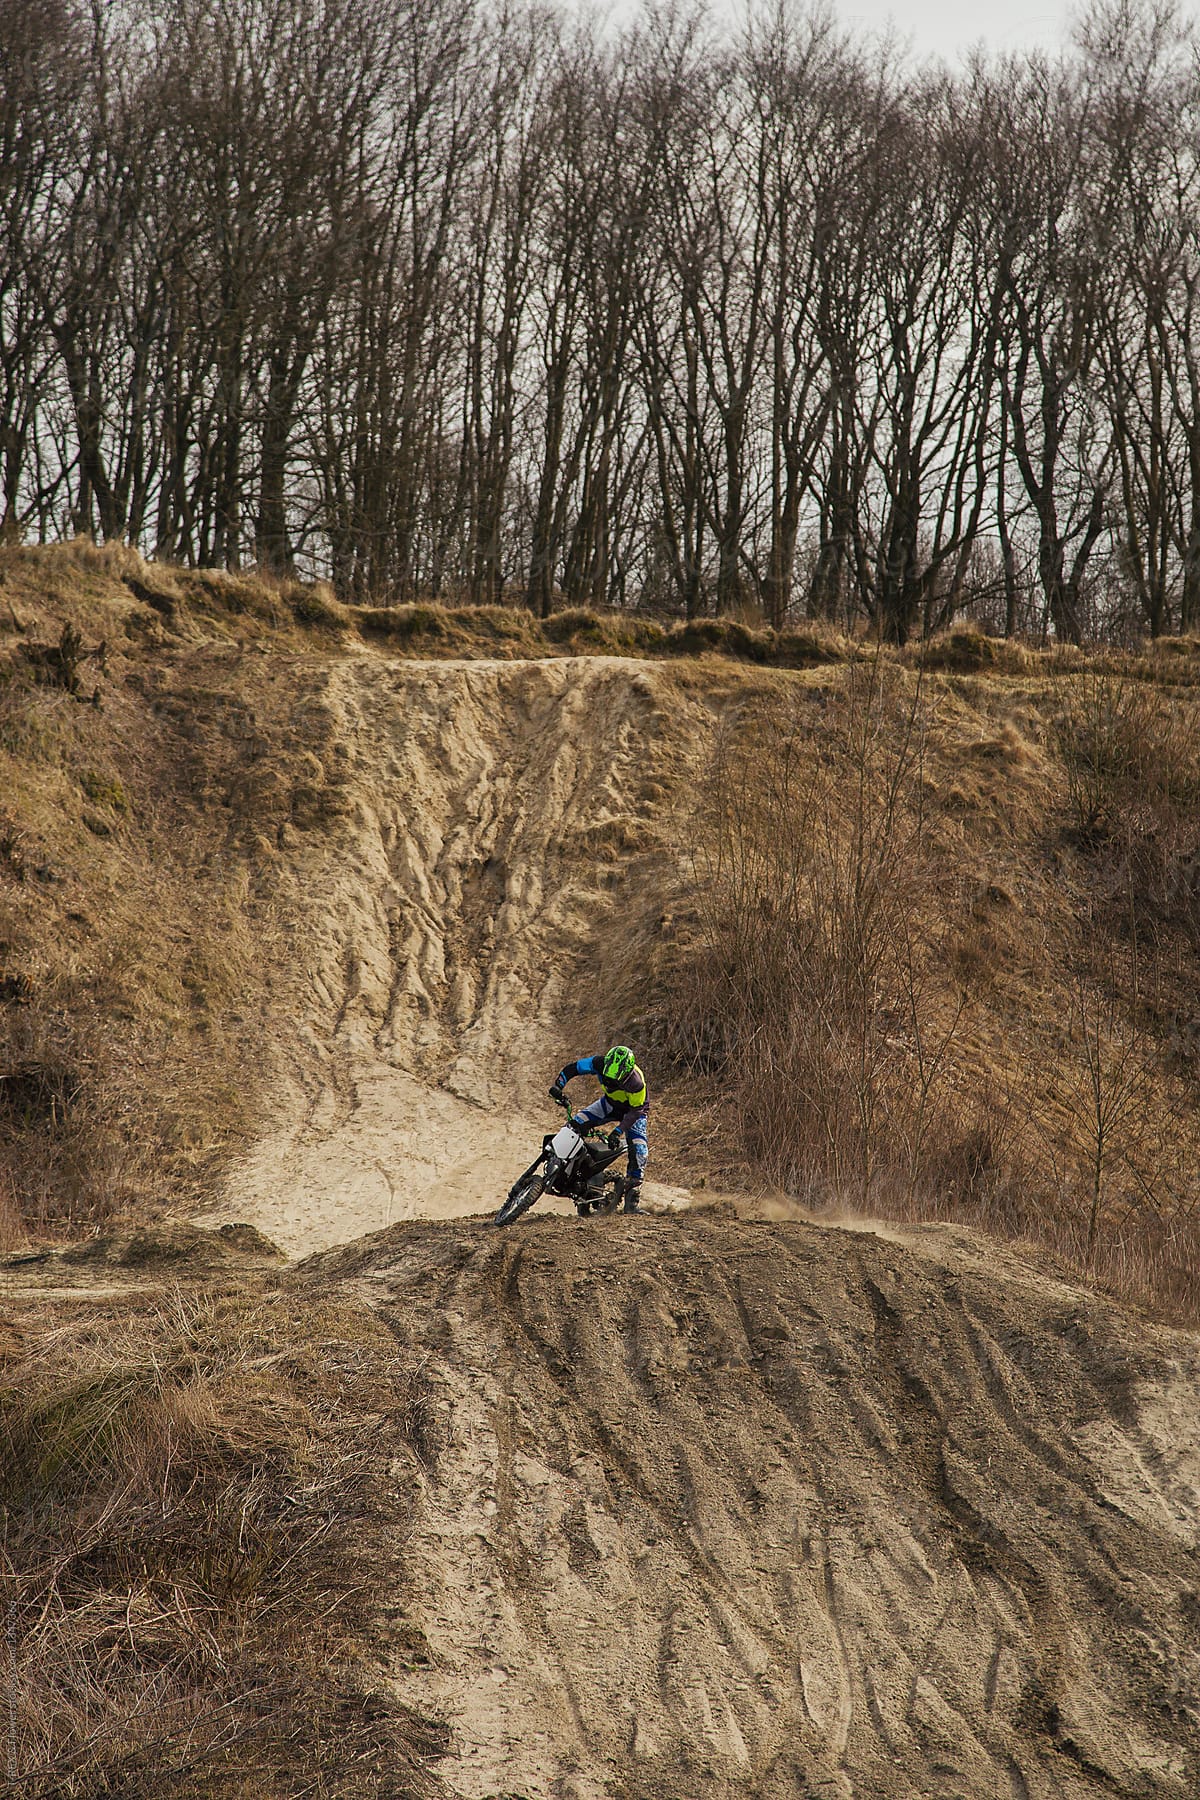 An extreme biker on a hill